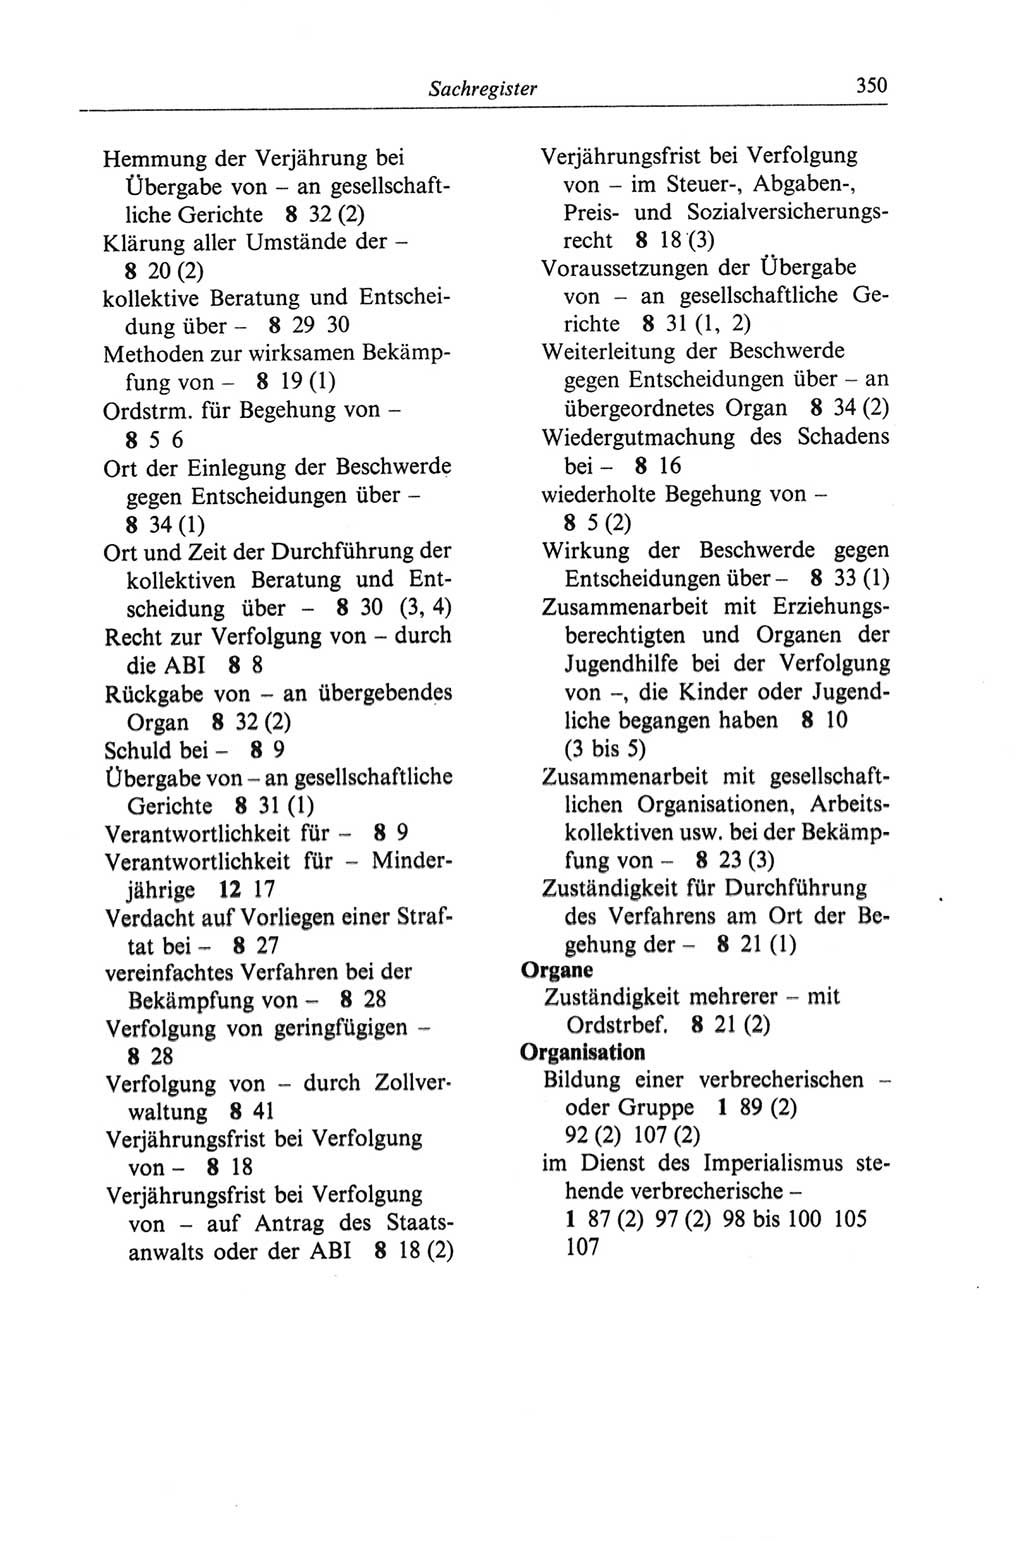 Strafgesetzbuch (StGB) der Deutschen Demokratischen Republik (DDR) und angrenzende Gesetze und Bestimmungen 1968, Seite 350 (StGB Ges. Best. DDR 1968, S. 350)